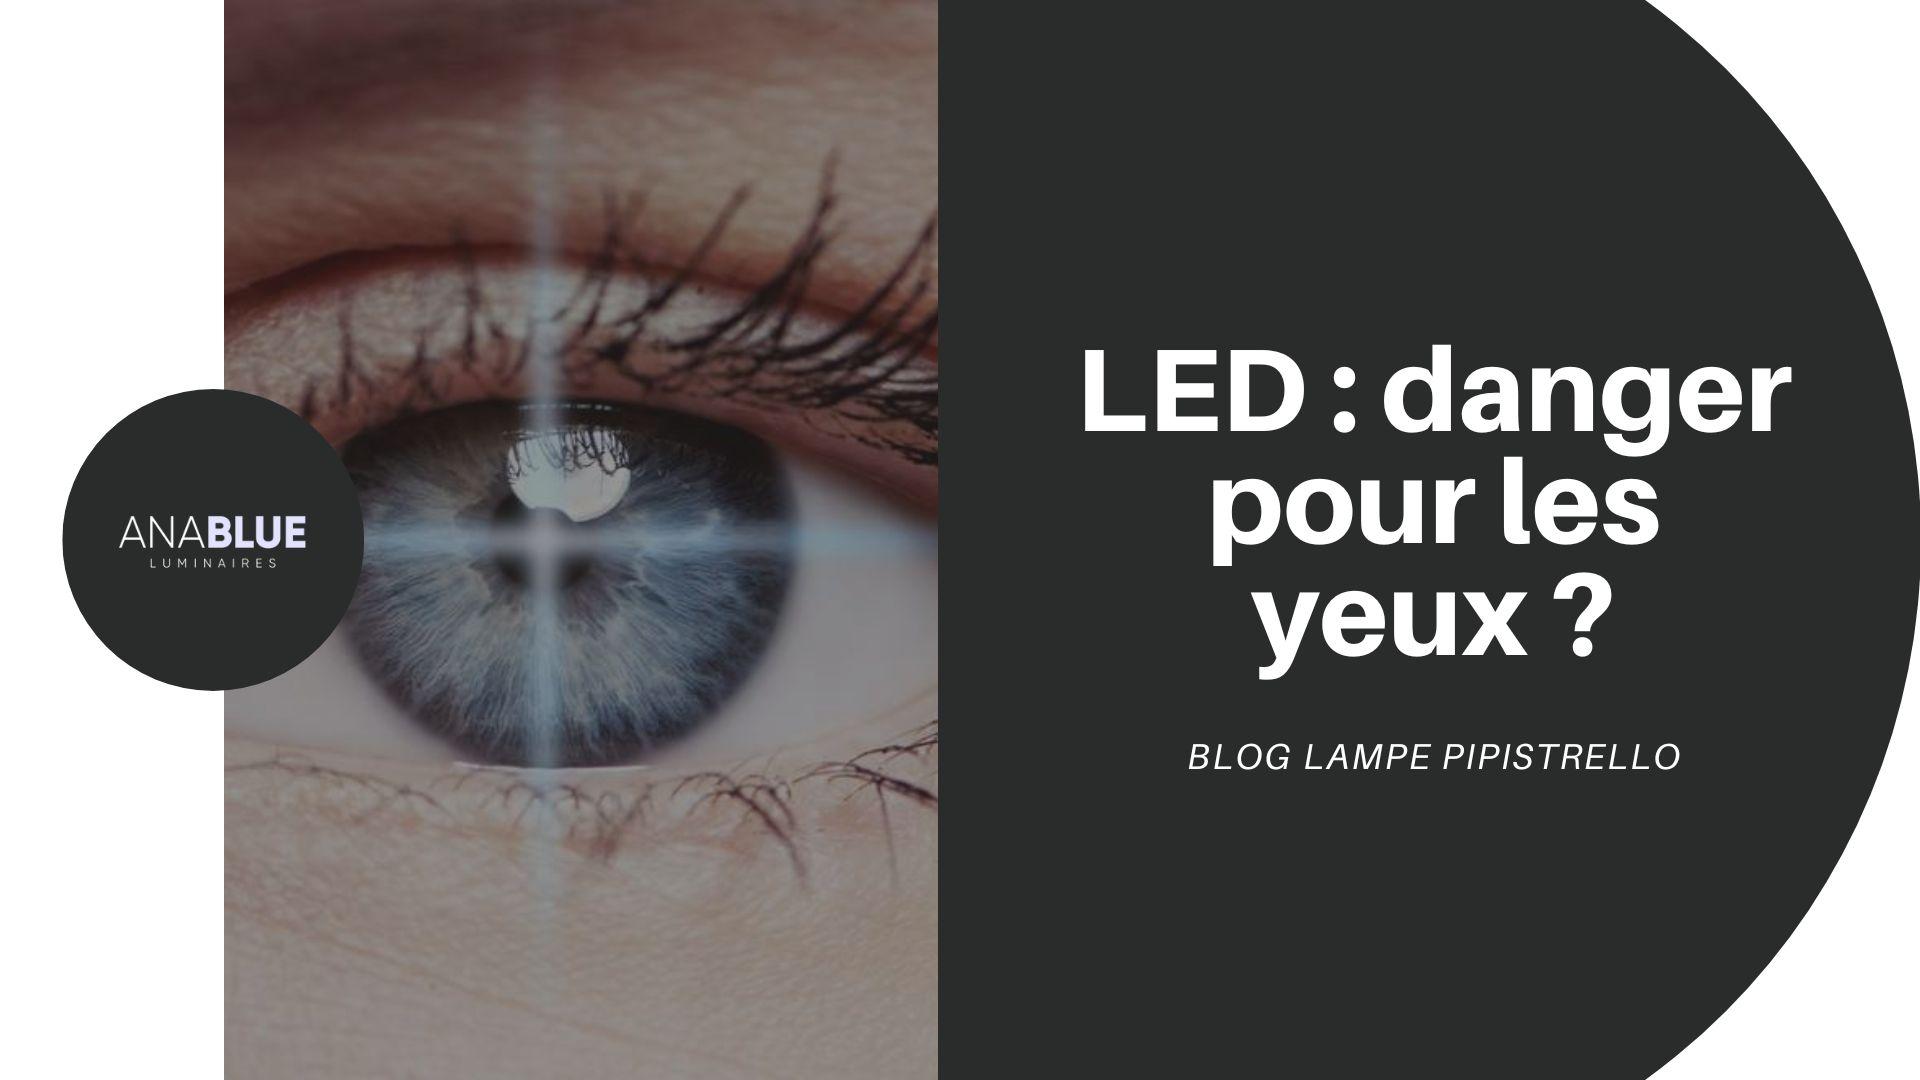 LED danger pour les yeux